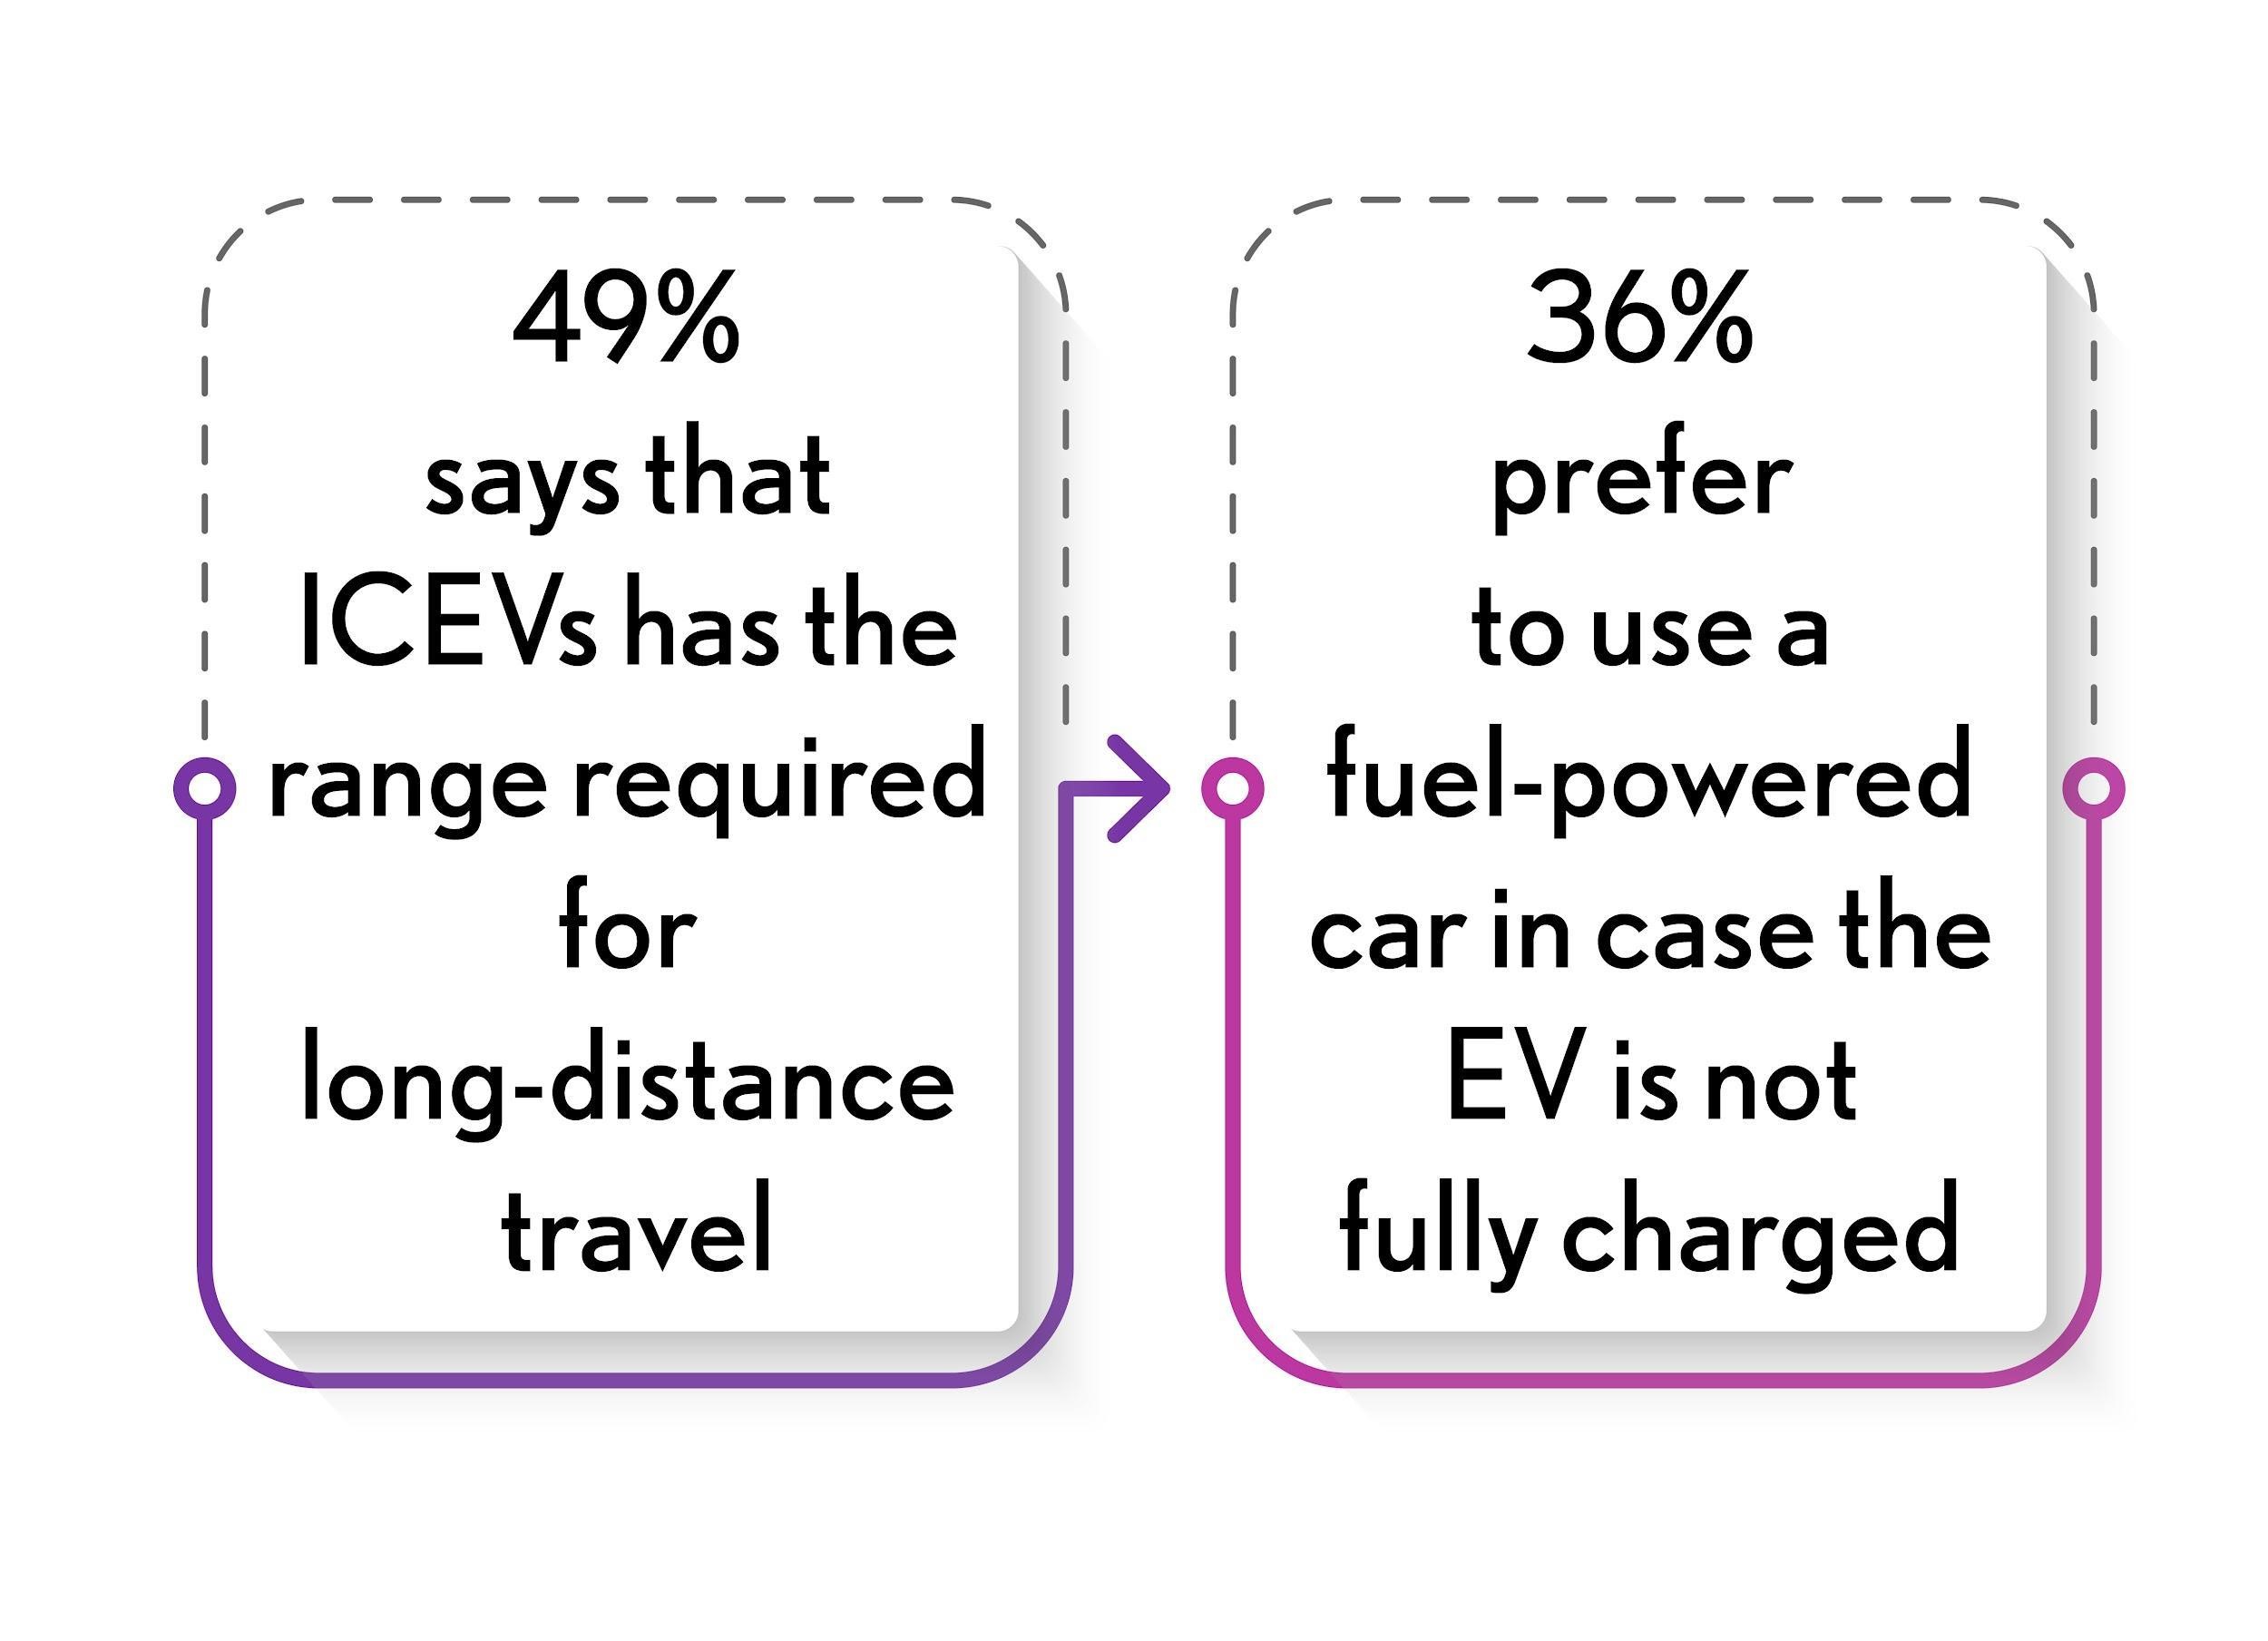 Preference for EV